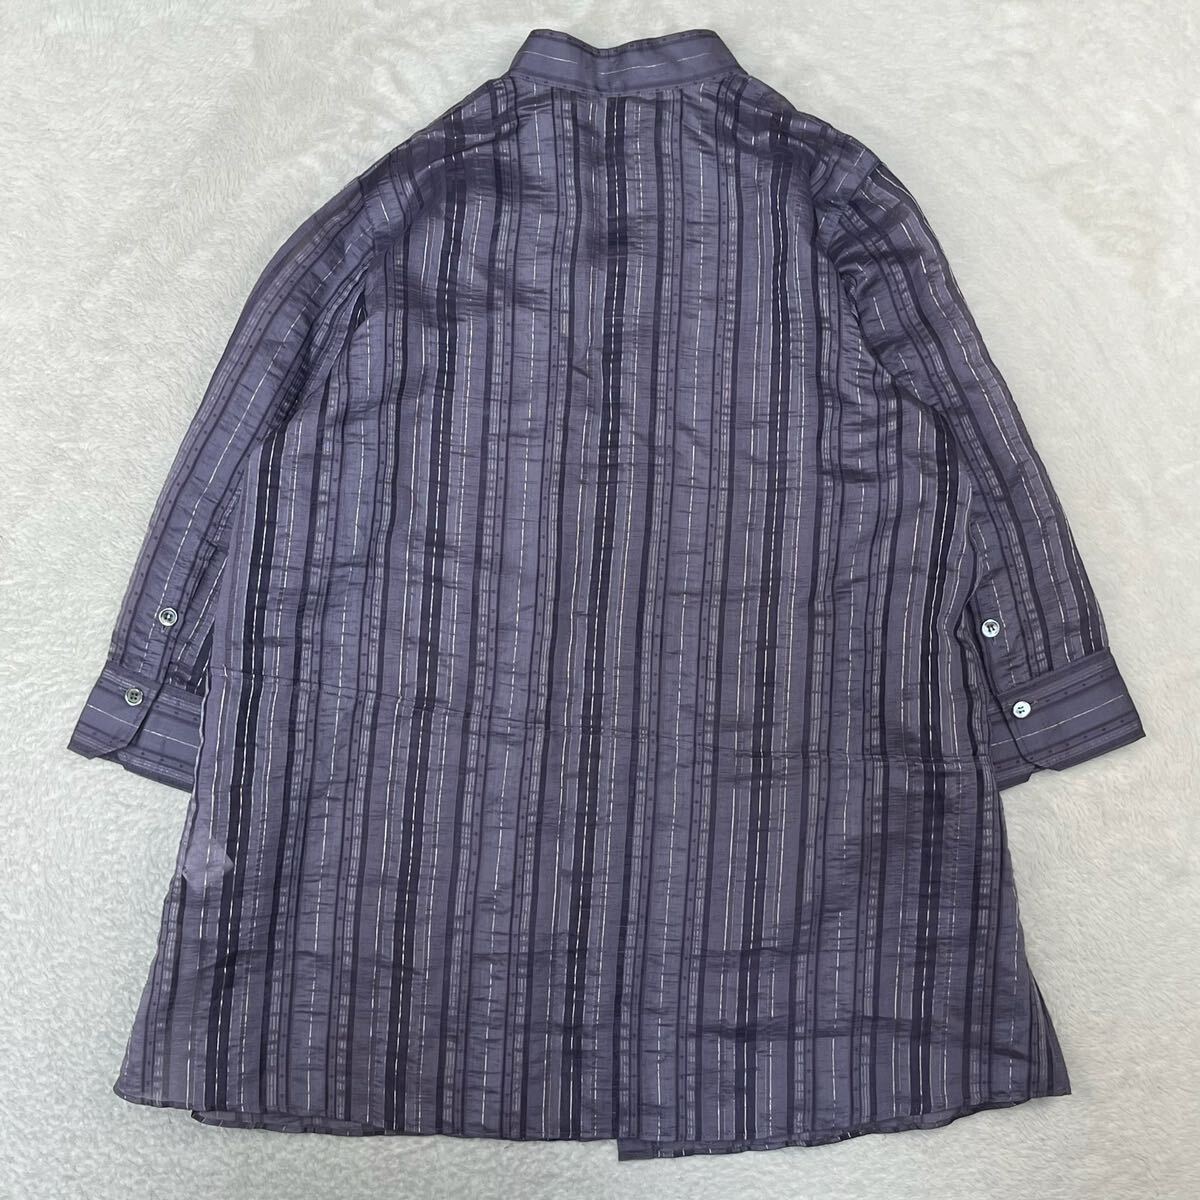 CHRISTIAN AUJARD Christian oja-ru рубашка One-piece длинный блуза sia- общий рисунок шелк стрейч люкс сделано в Японии 13 номер 